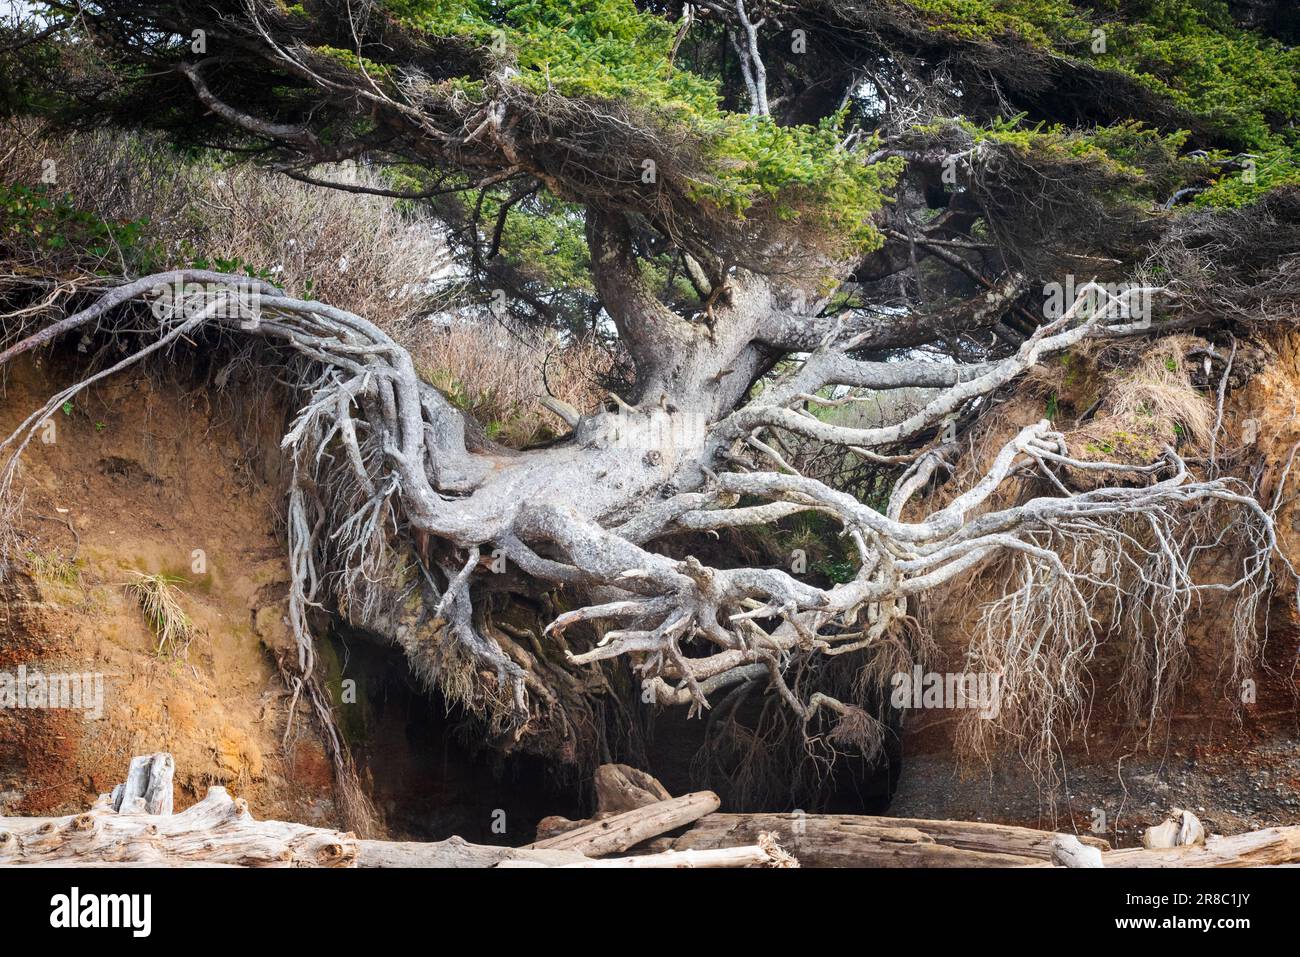 Kalaloch Tree of Life (auch bekannt als Kalaloch Tree Root Cave) befindet sich in Forks, Washington, USA. Seine Wurzeln liegen über einem erodierenden Flussbett. Stockfoto